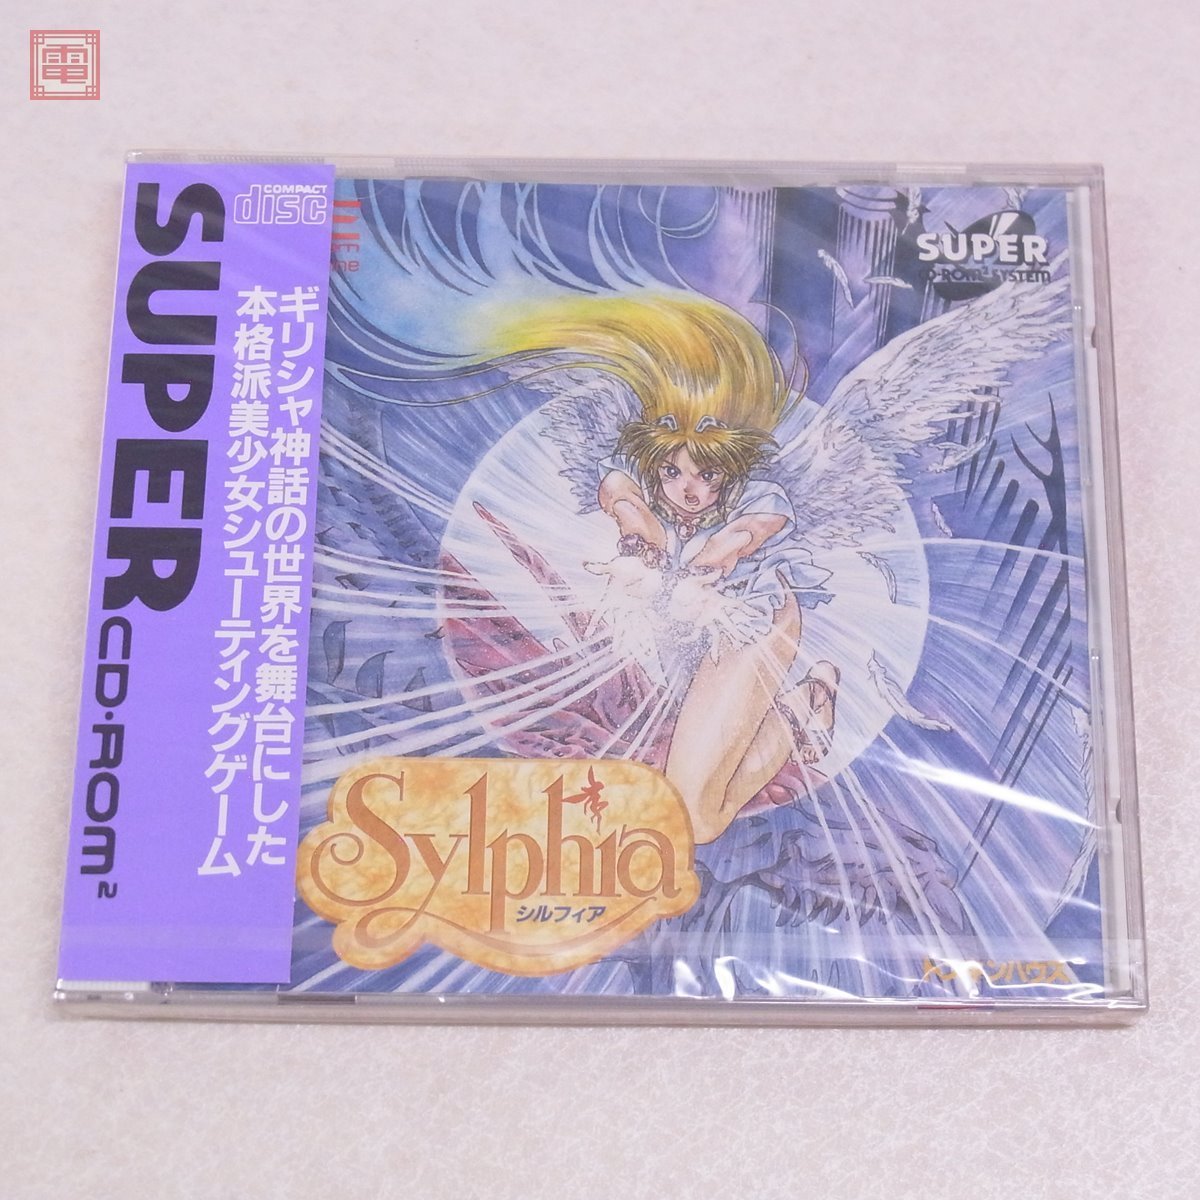 未開封 PCE PCエンジン SUPER CD-ROM2 シルフィア Sylphia